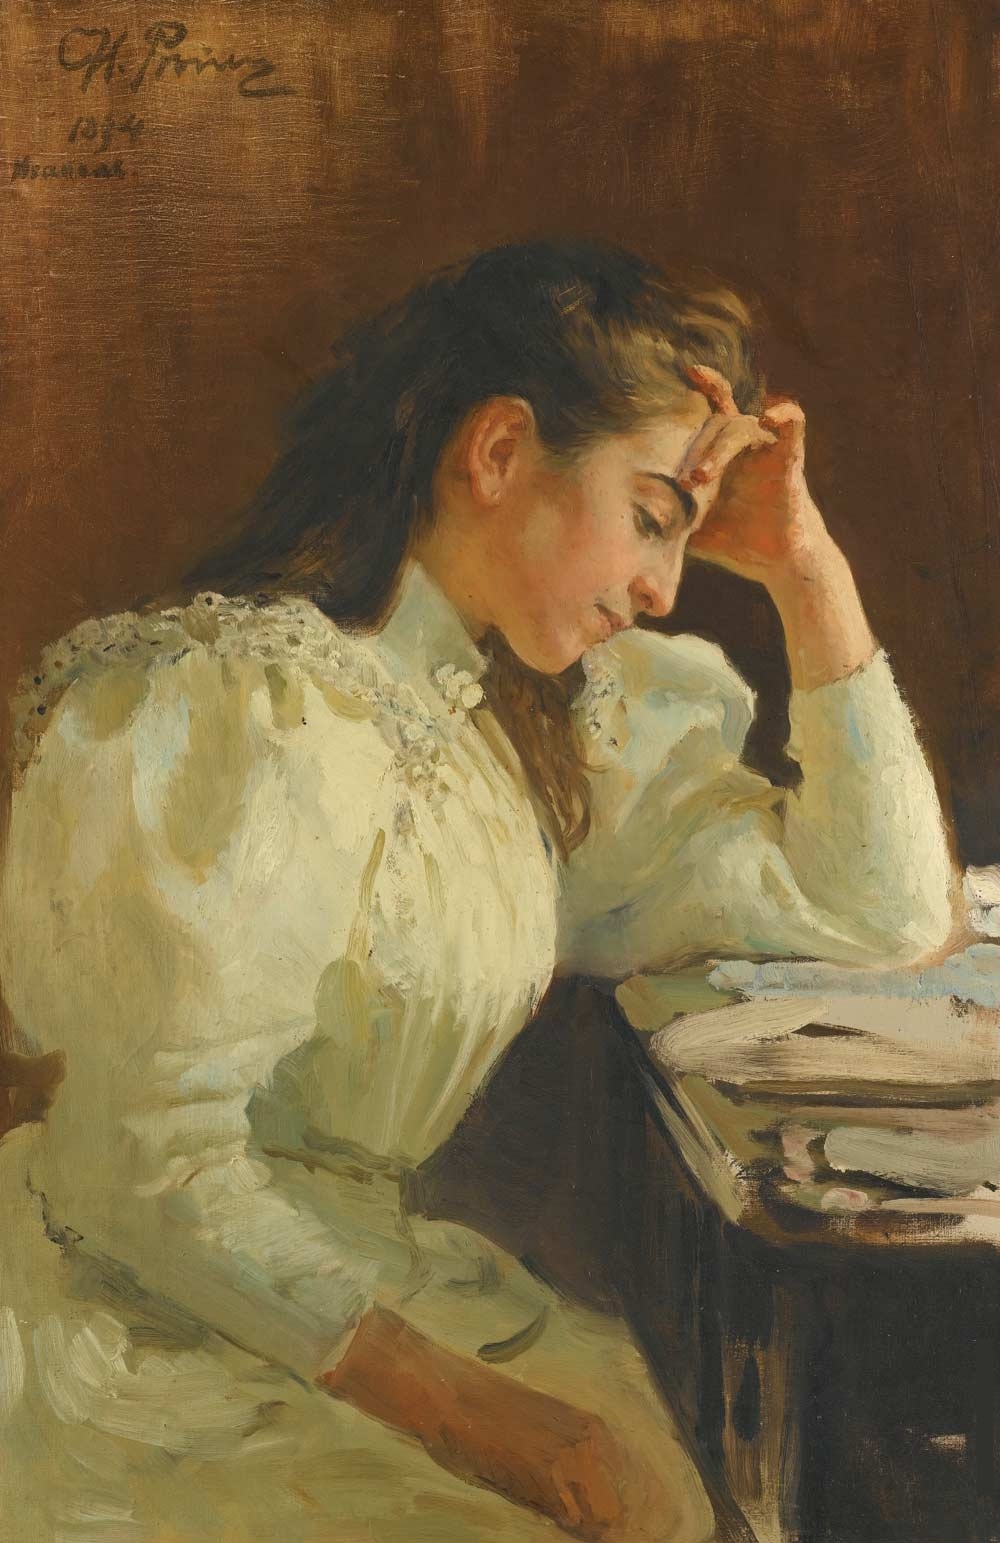 Neapolitan_woman_(1894)_by_Ilya_Repin